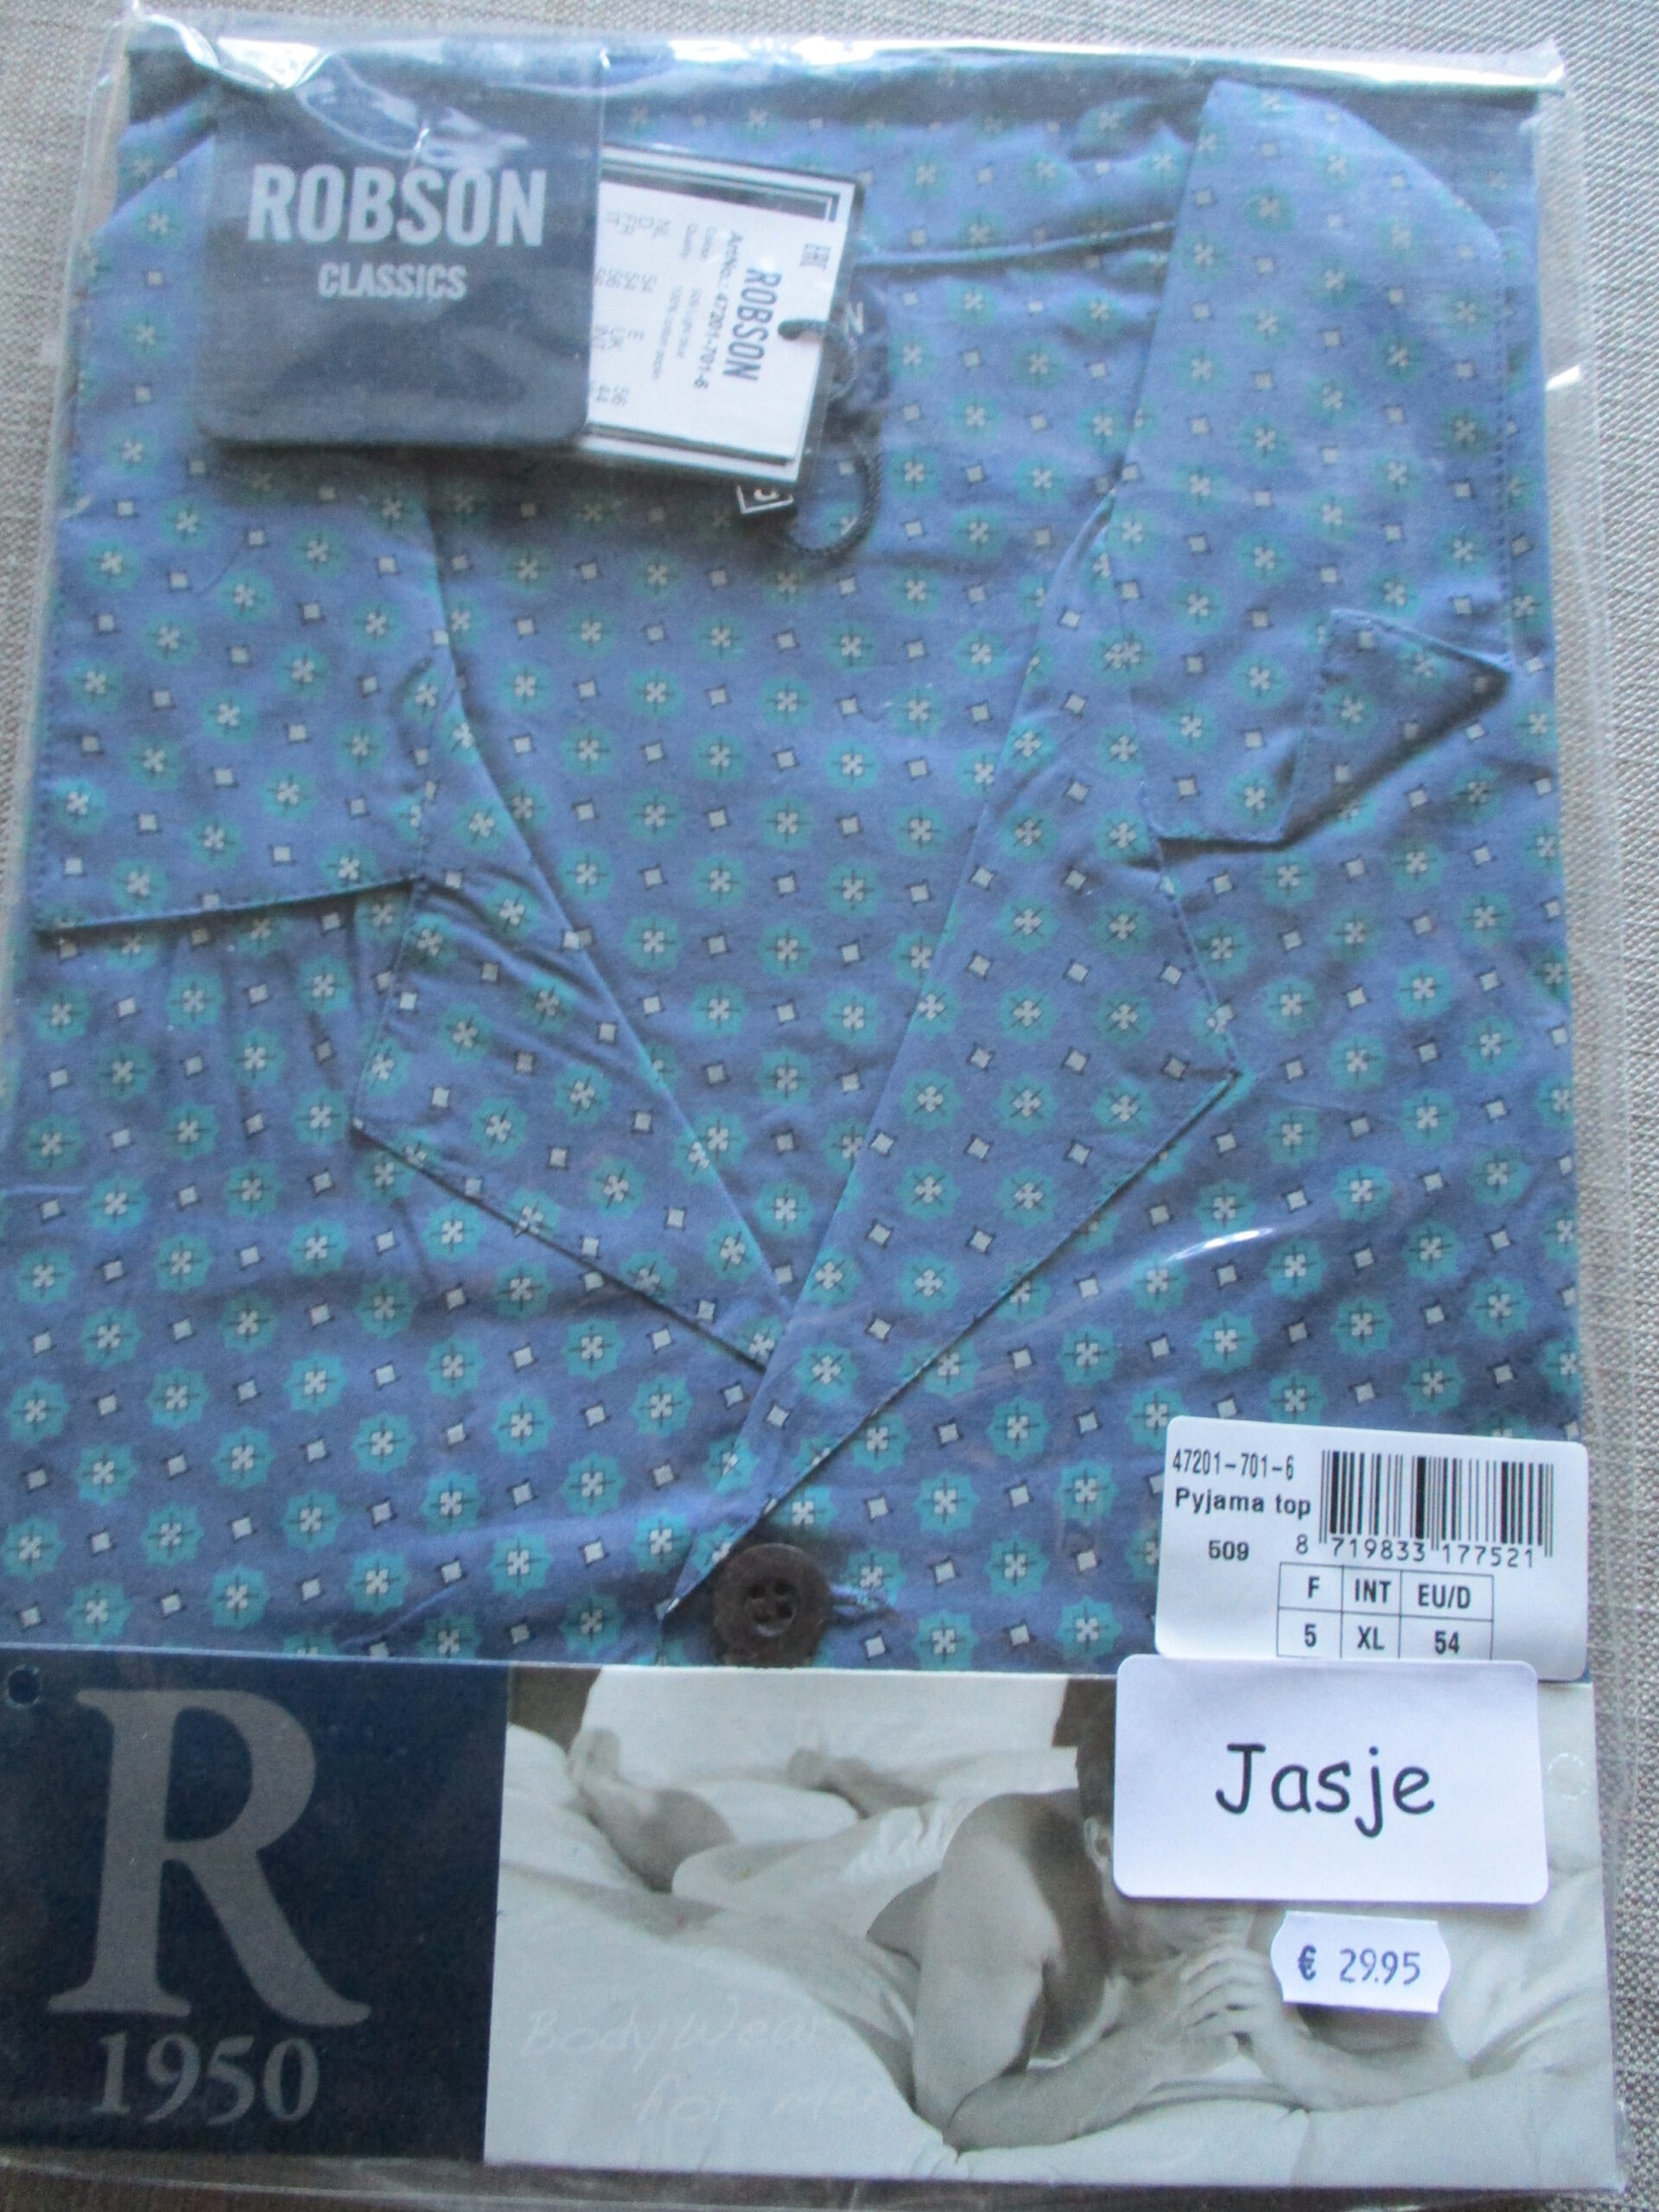 Floreren kever achterstalligheid Heren pyjamajasje Robson blauw printje 47201-701-6 (509) – De Schutsestal